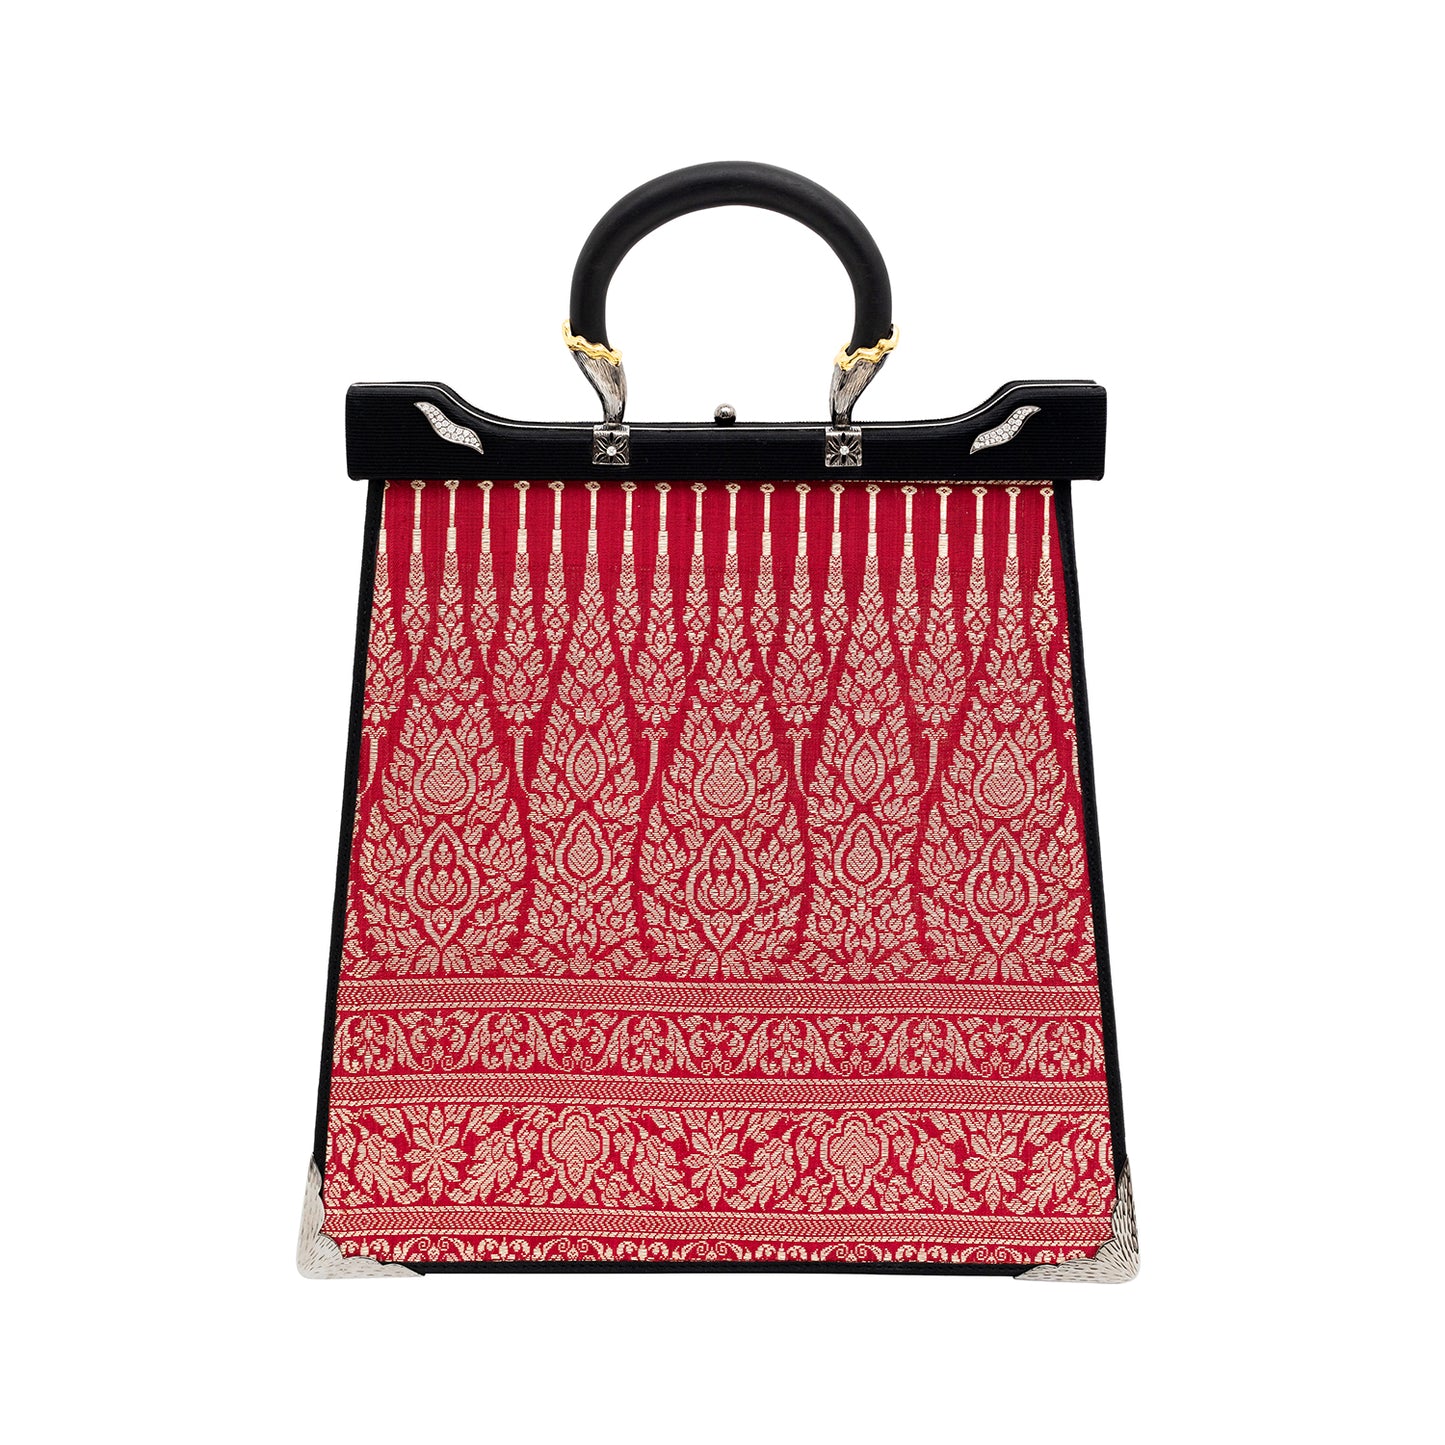 Silapacheep Textile Handbag with Pearl and Diamond